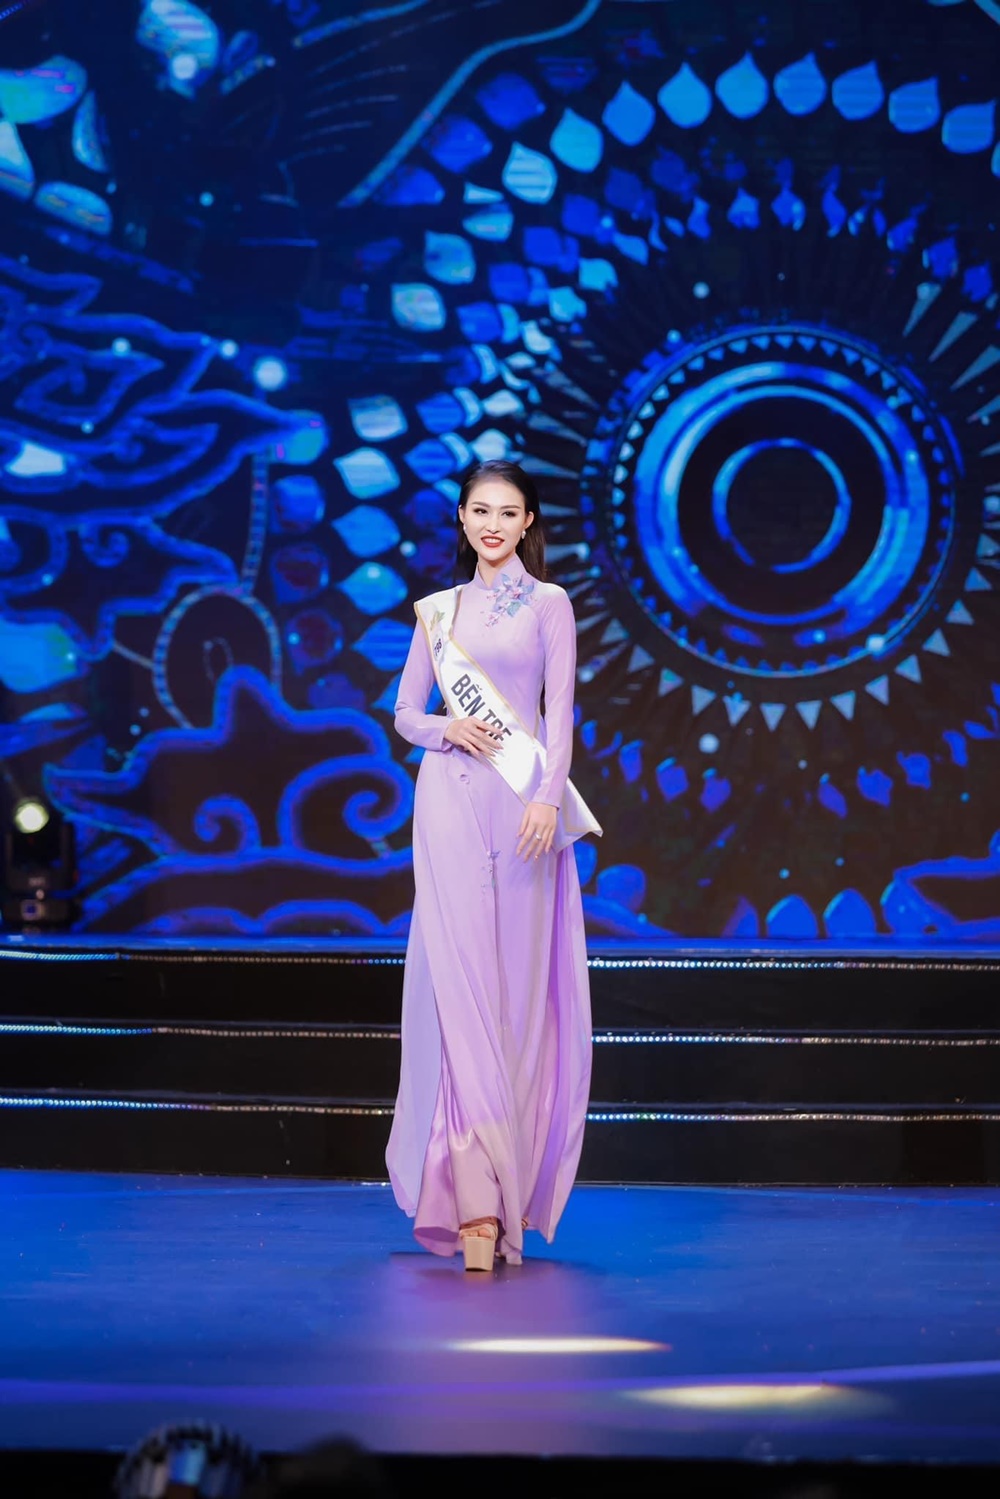 Trần Nguyễn Phương Thanh: Tôi hạnh phúc với danh hiệu Á hậu 2 Hoa hậu Du lịch Việt Nam 2022 - ảnh 2